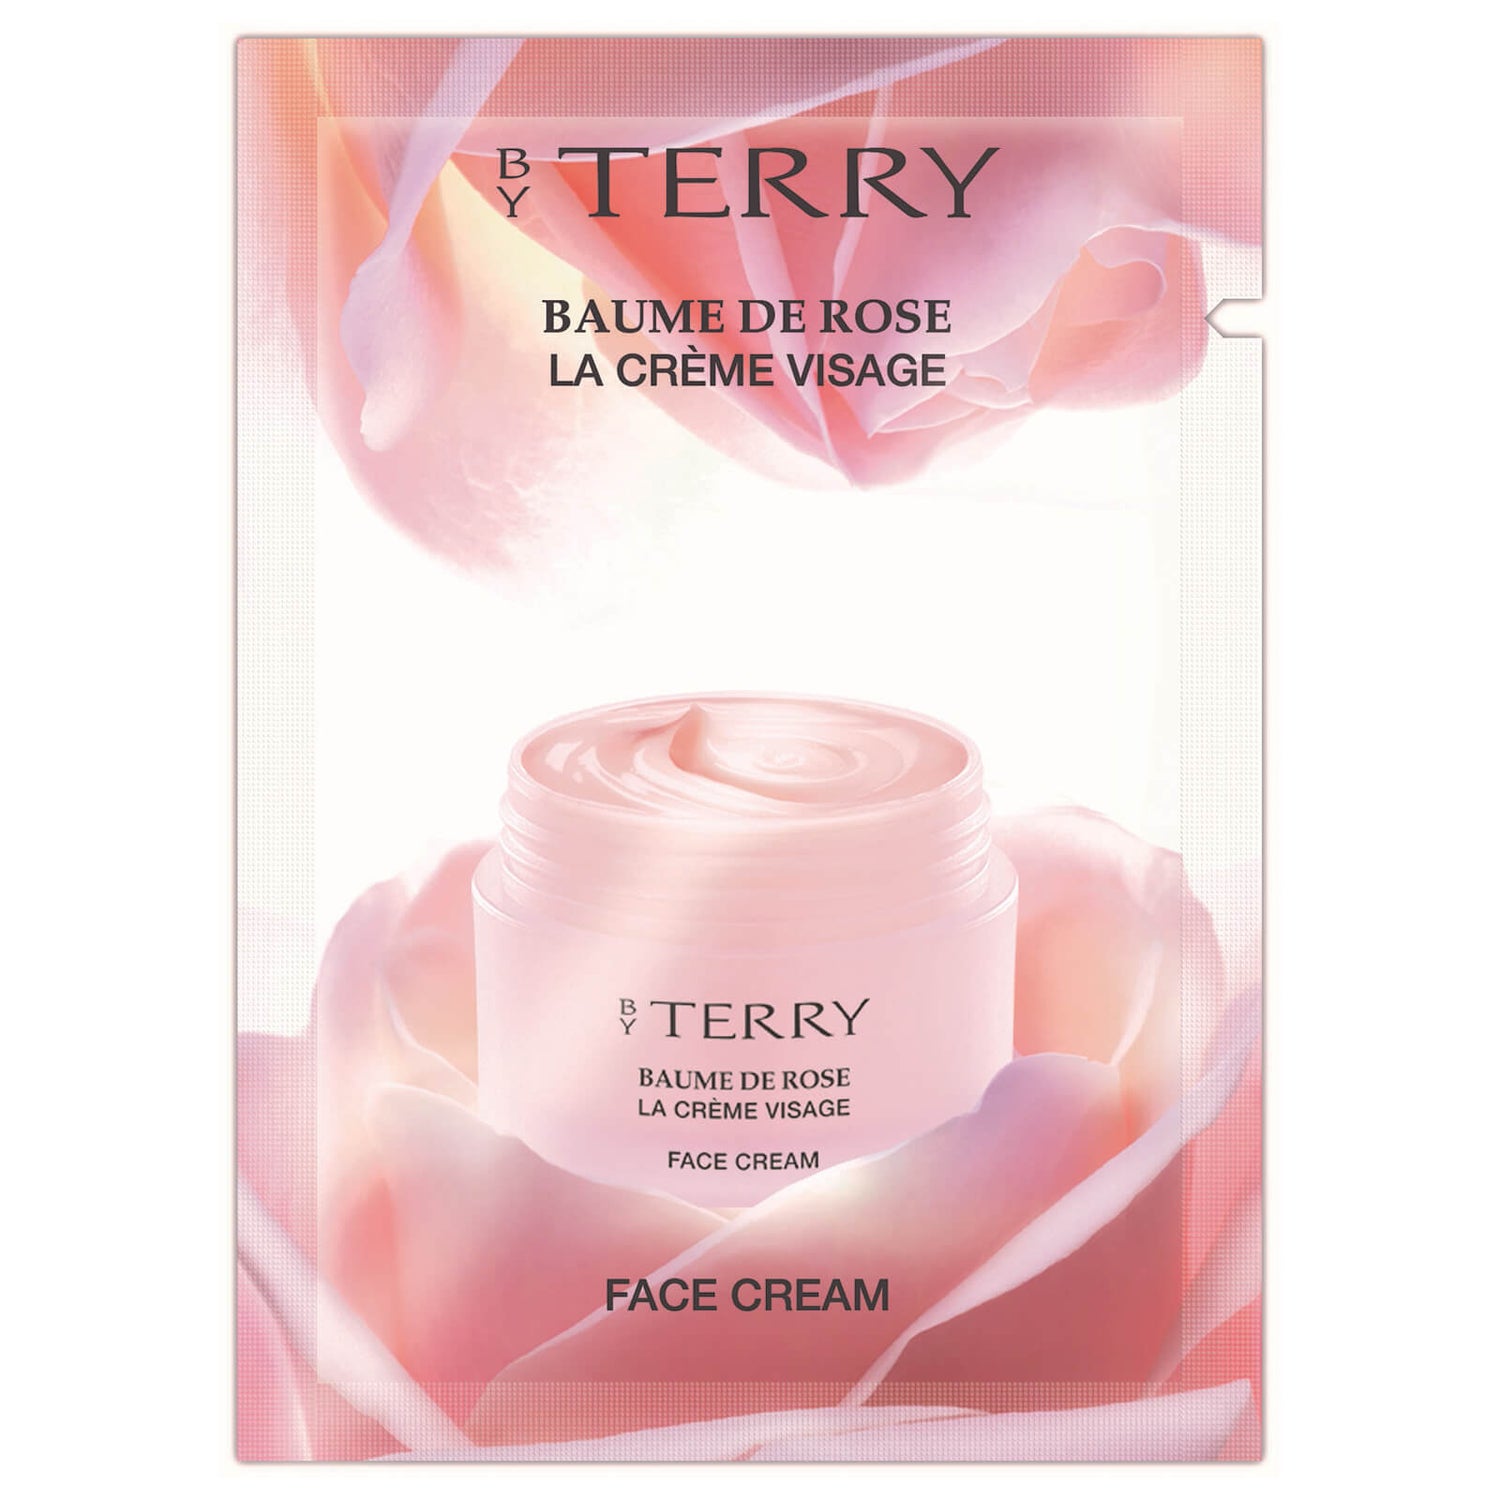 By Terry Baume De Rose La Crème Visage Face Cream Packette